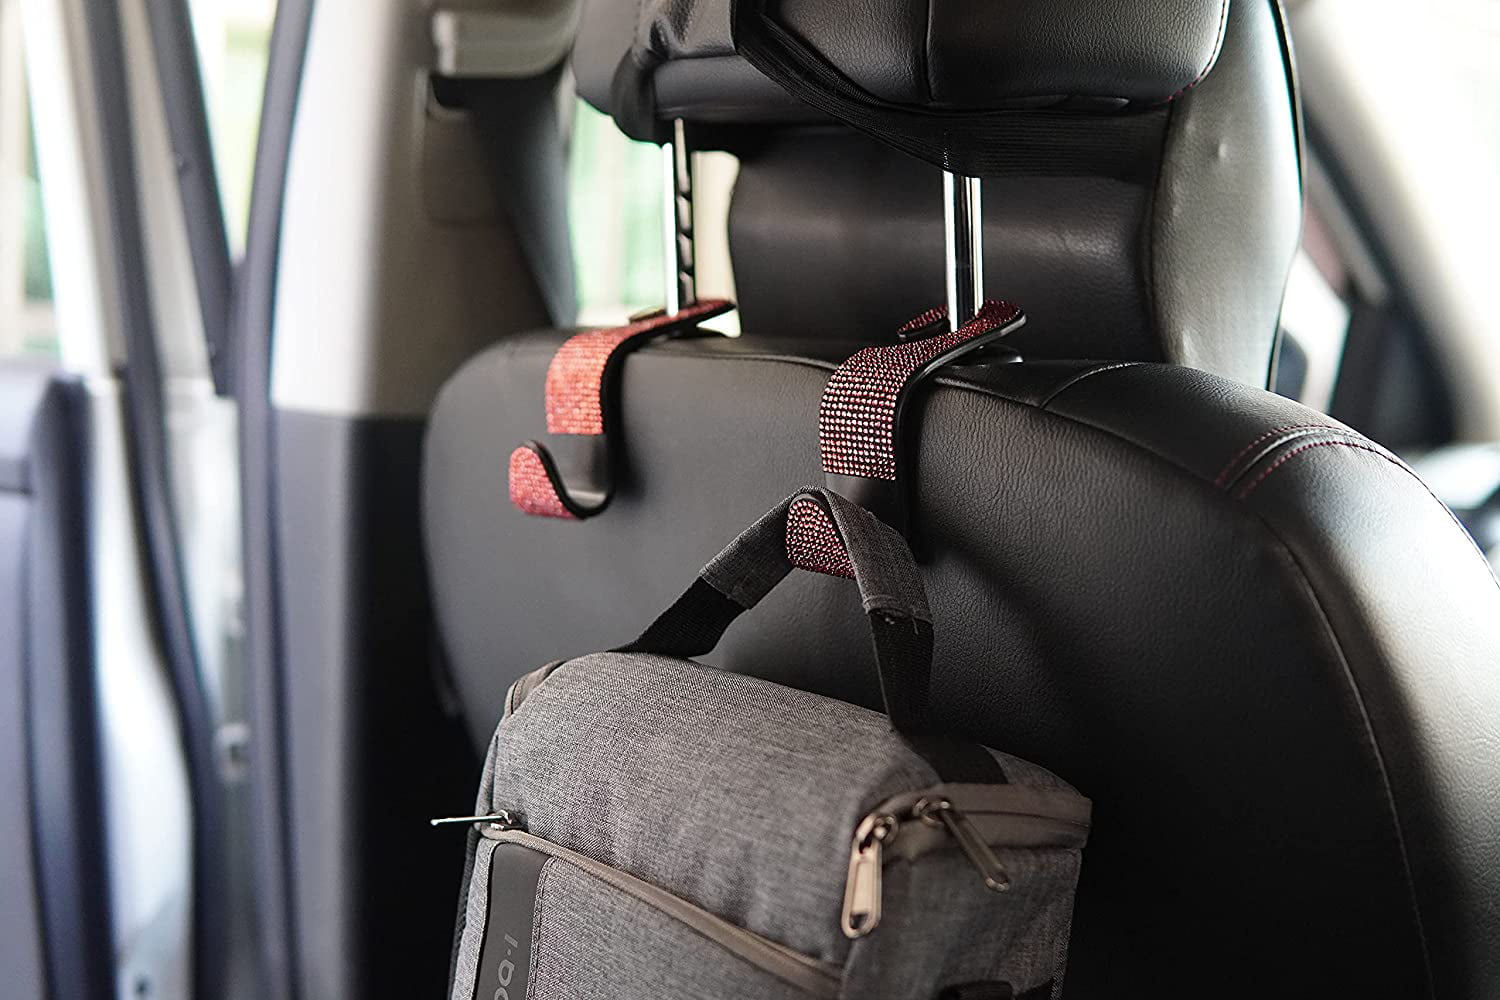 4x Car Seat Back Headrest Hooks Hanger Holder Hook for Bag Purse Cloth Grocery 